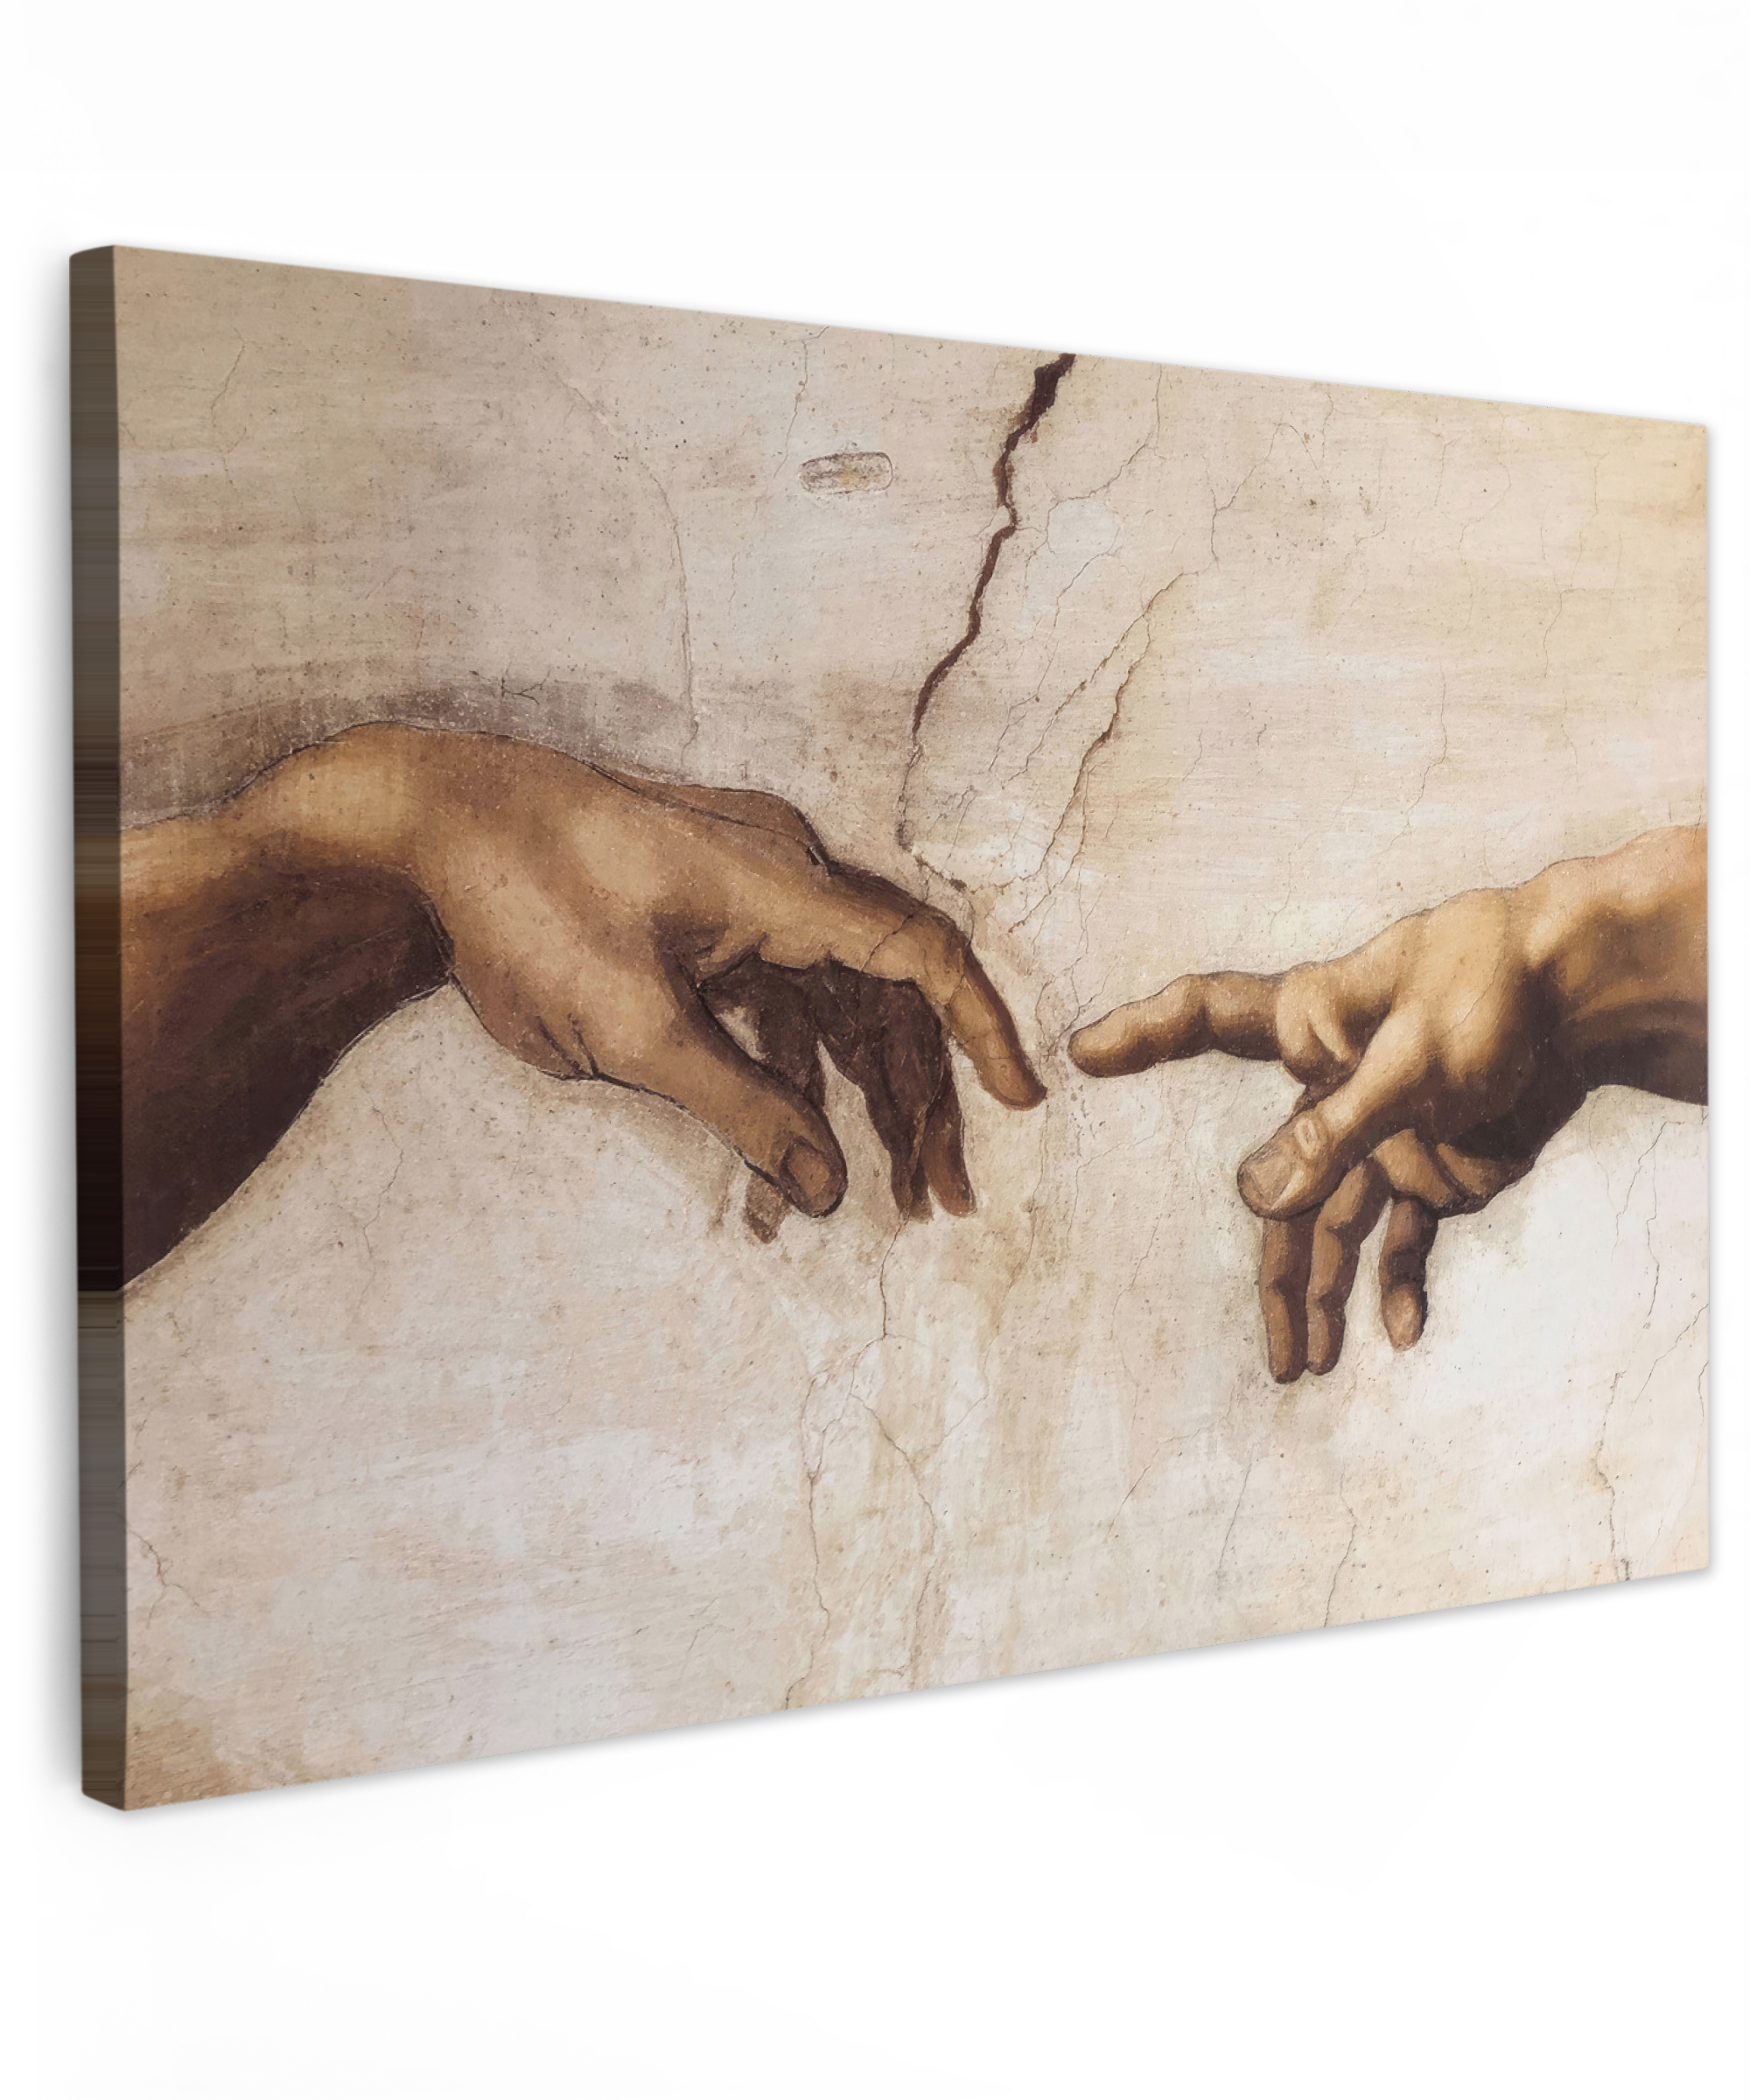 Leinwandbild - Adam - Michelangelo - Gemälde - Erschaffung Adams